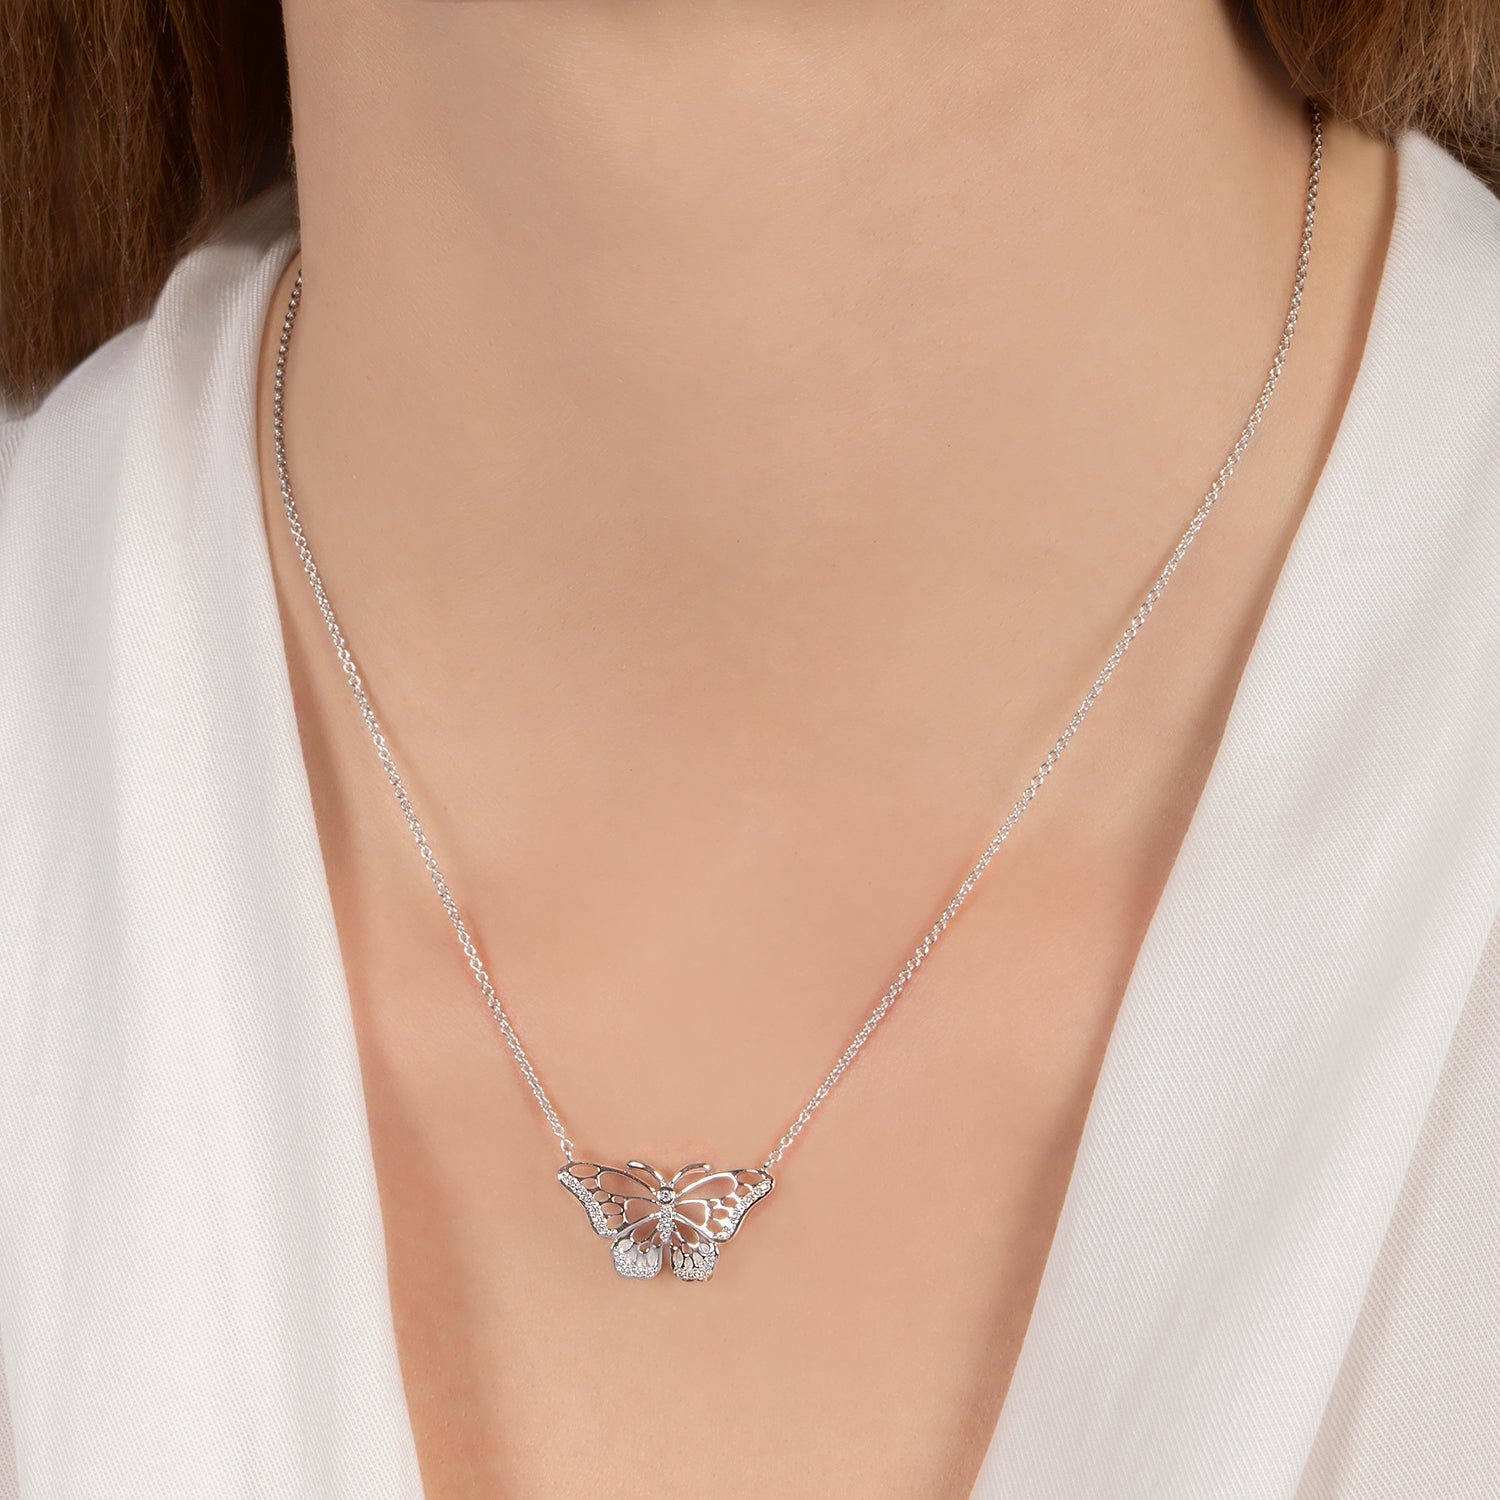 Hallmark Fine Jewelry Monarch Butterfly Bolo Bracelet in Sterling Silver with Diamonds by Hallmark Diamonds I Fine Jewelry